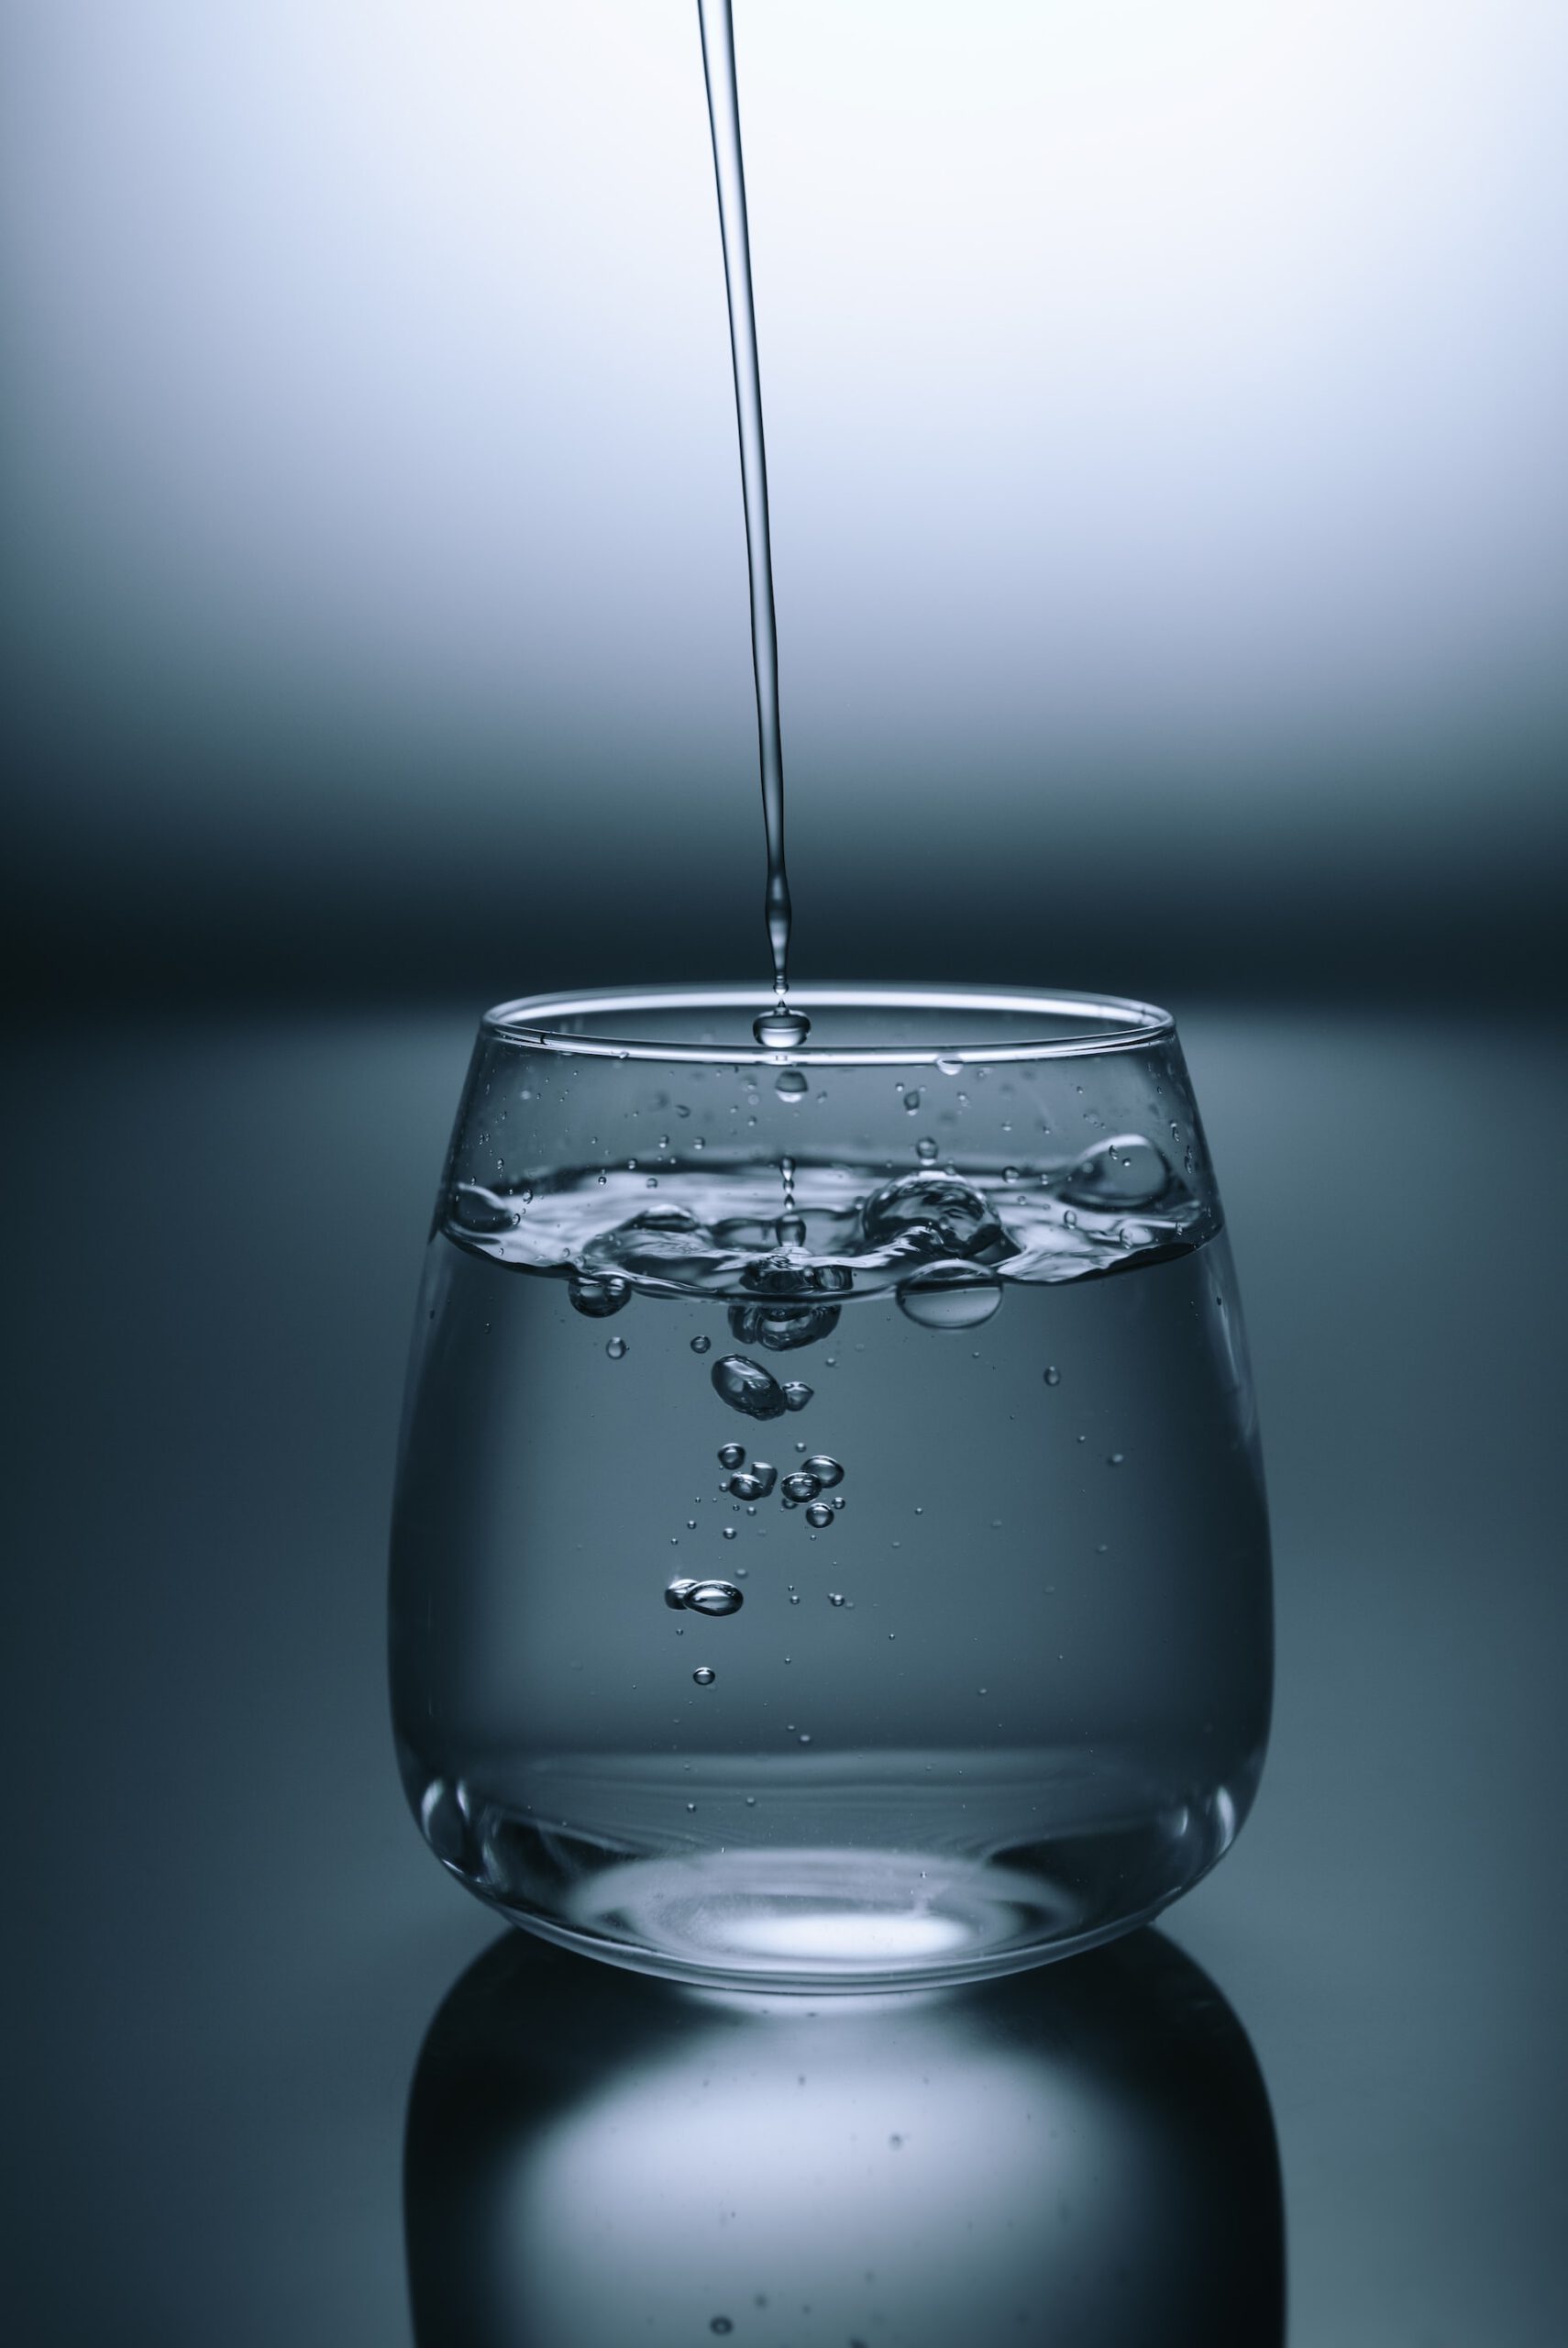 Hygienelösungen für sauberes Trinkwasser